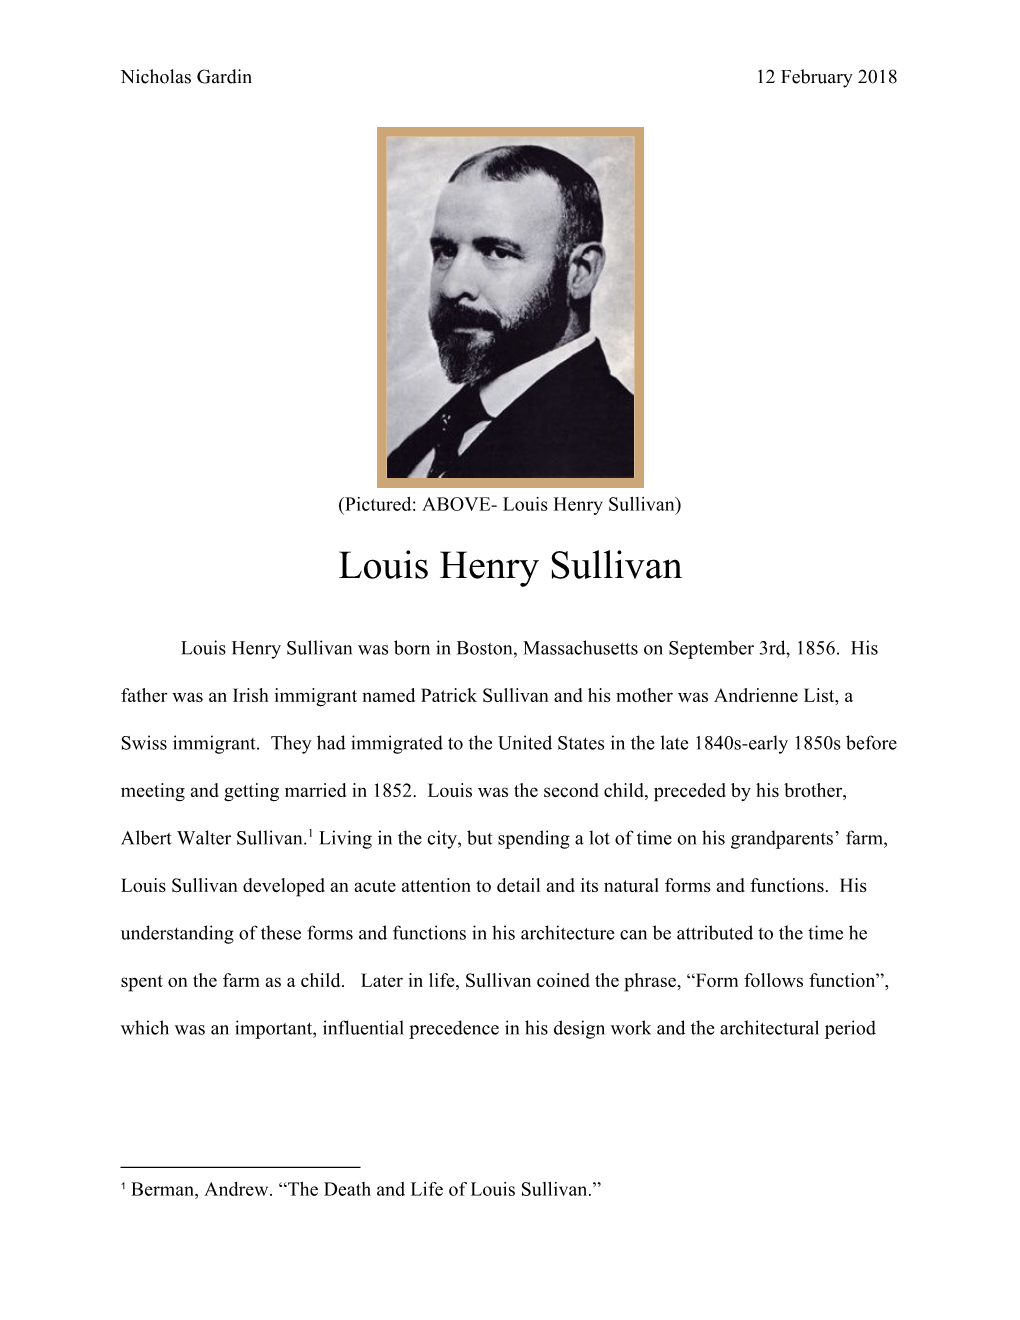 Louis Henry Sullivan) Louis Henry Sullivan